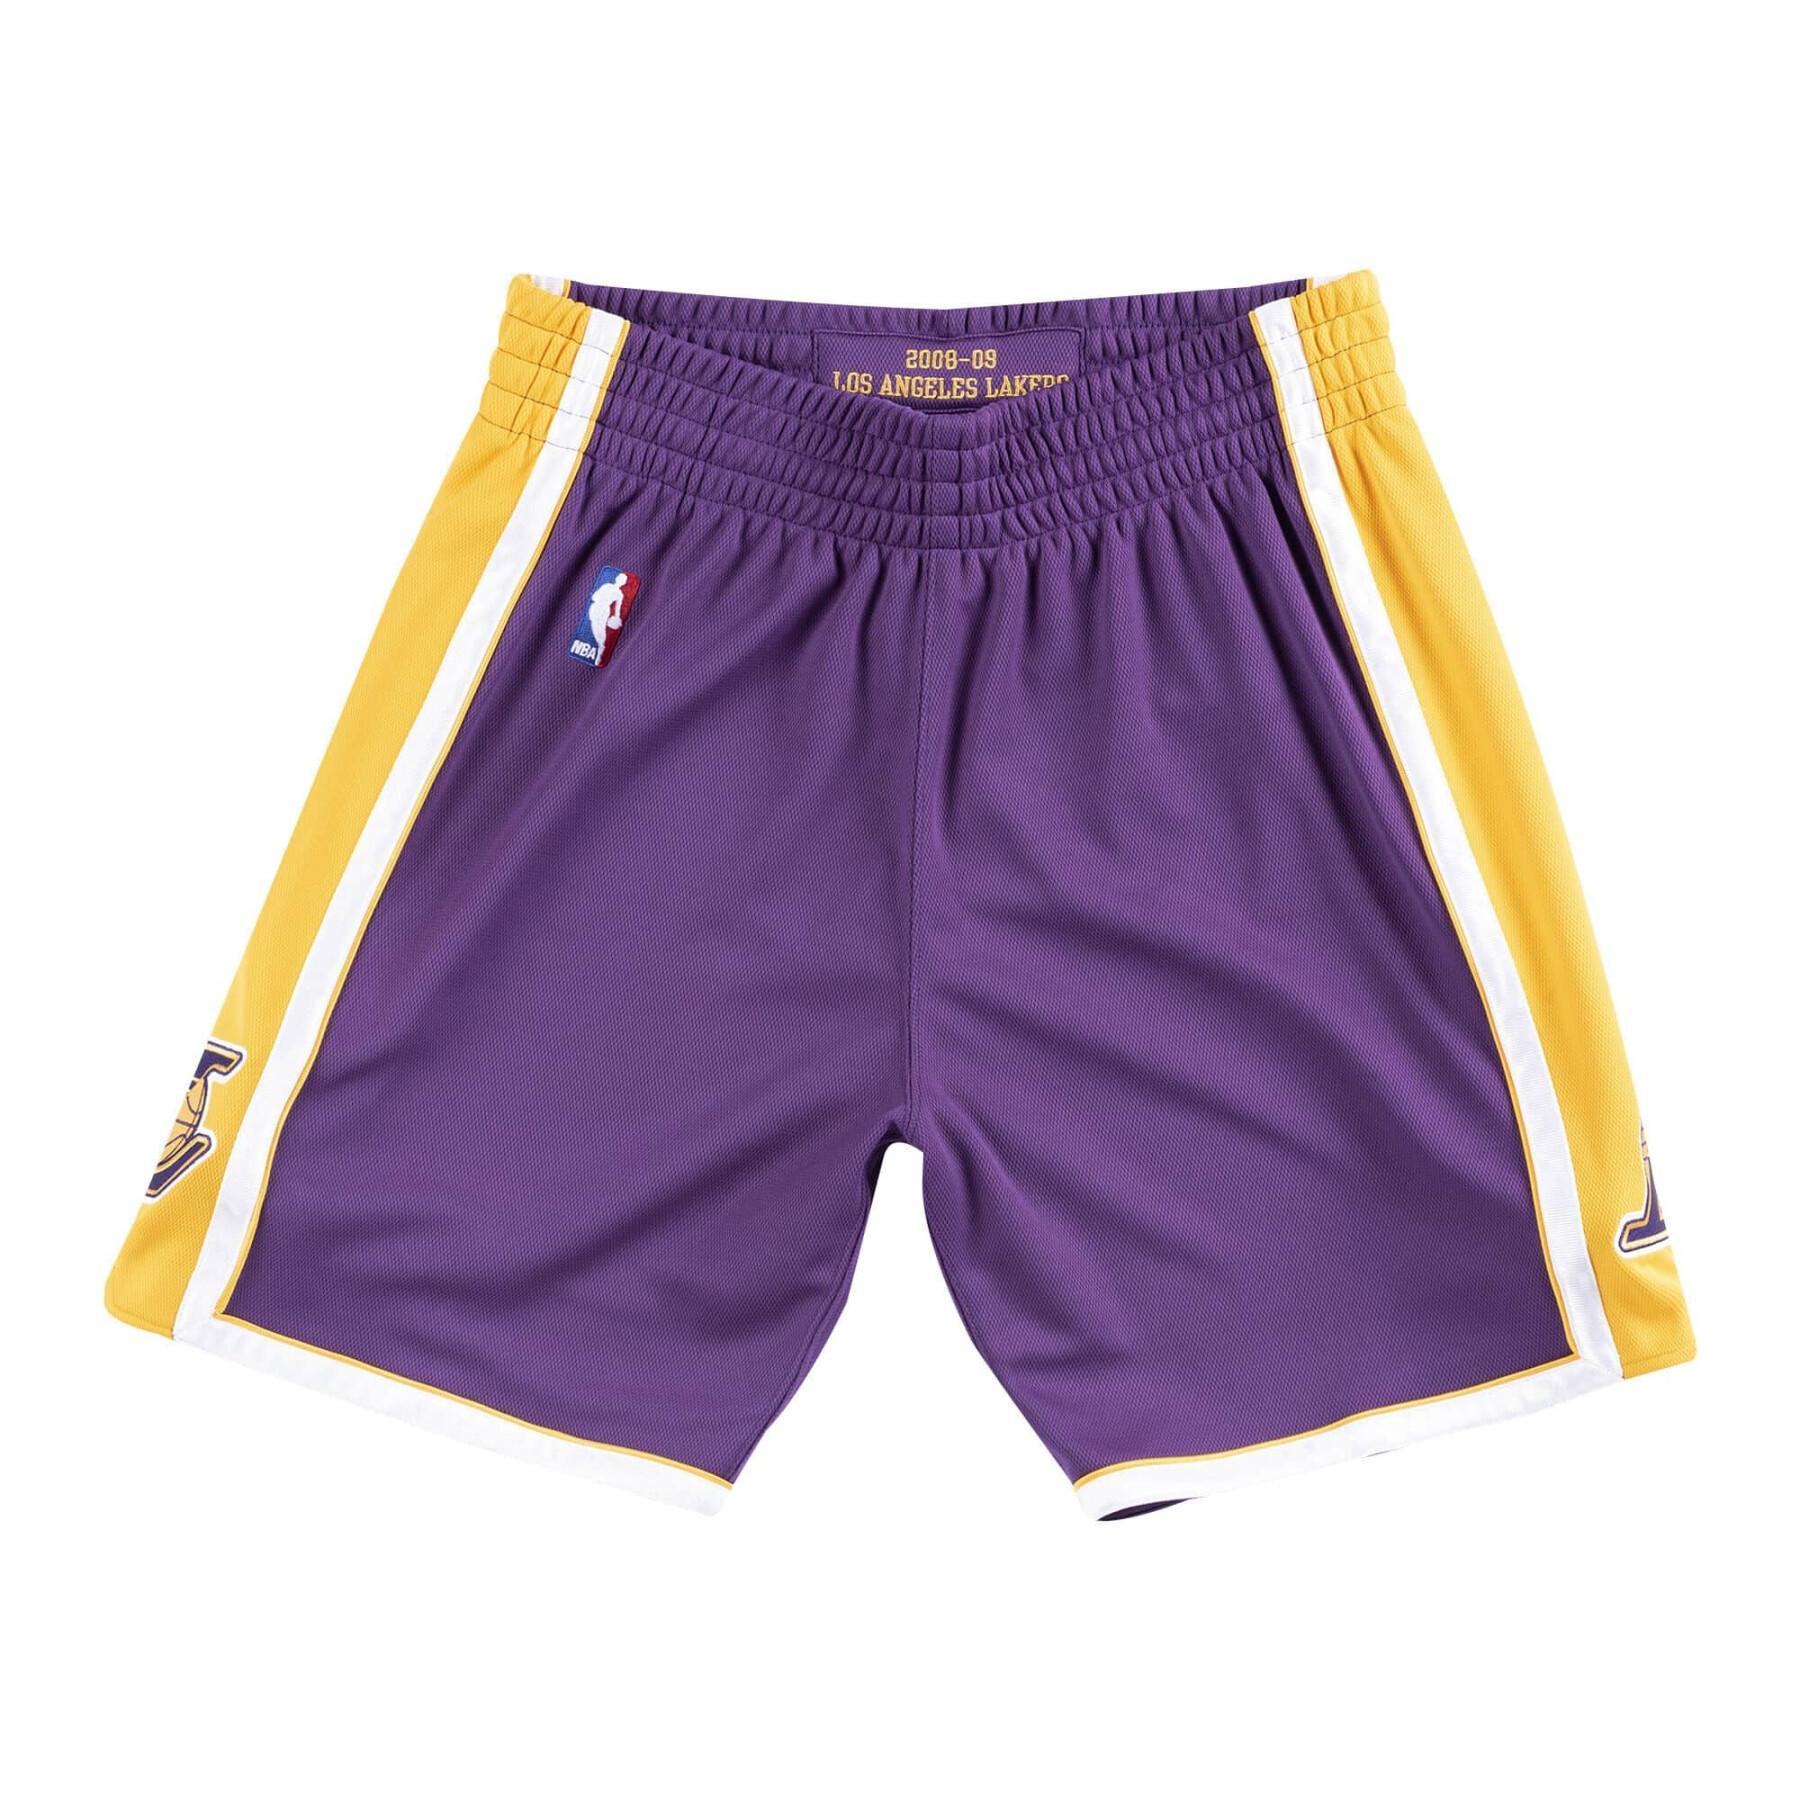 Shorts Los Angeles Lakers NBA Road 08-09